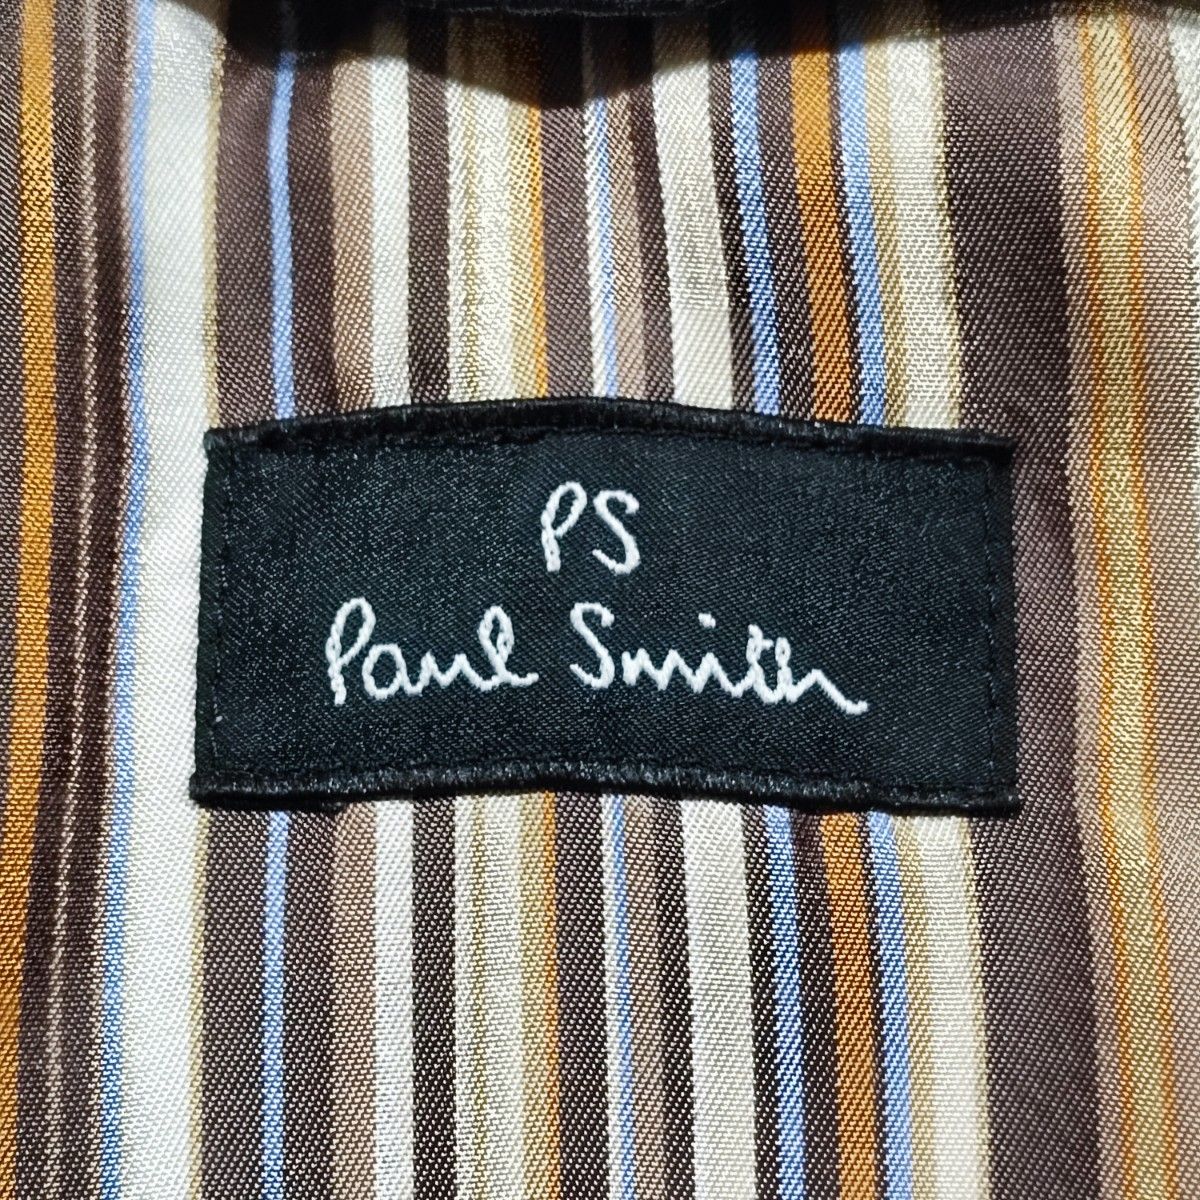 日本製★Paul Smith ライナー付 ステンカラーコート S BLACK コート アウター トレンチコート ブラック